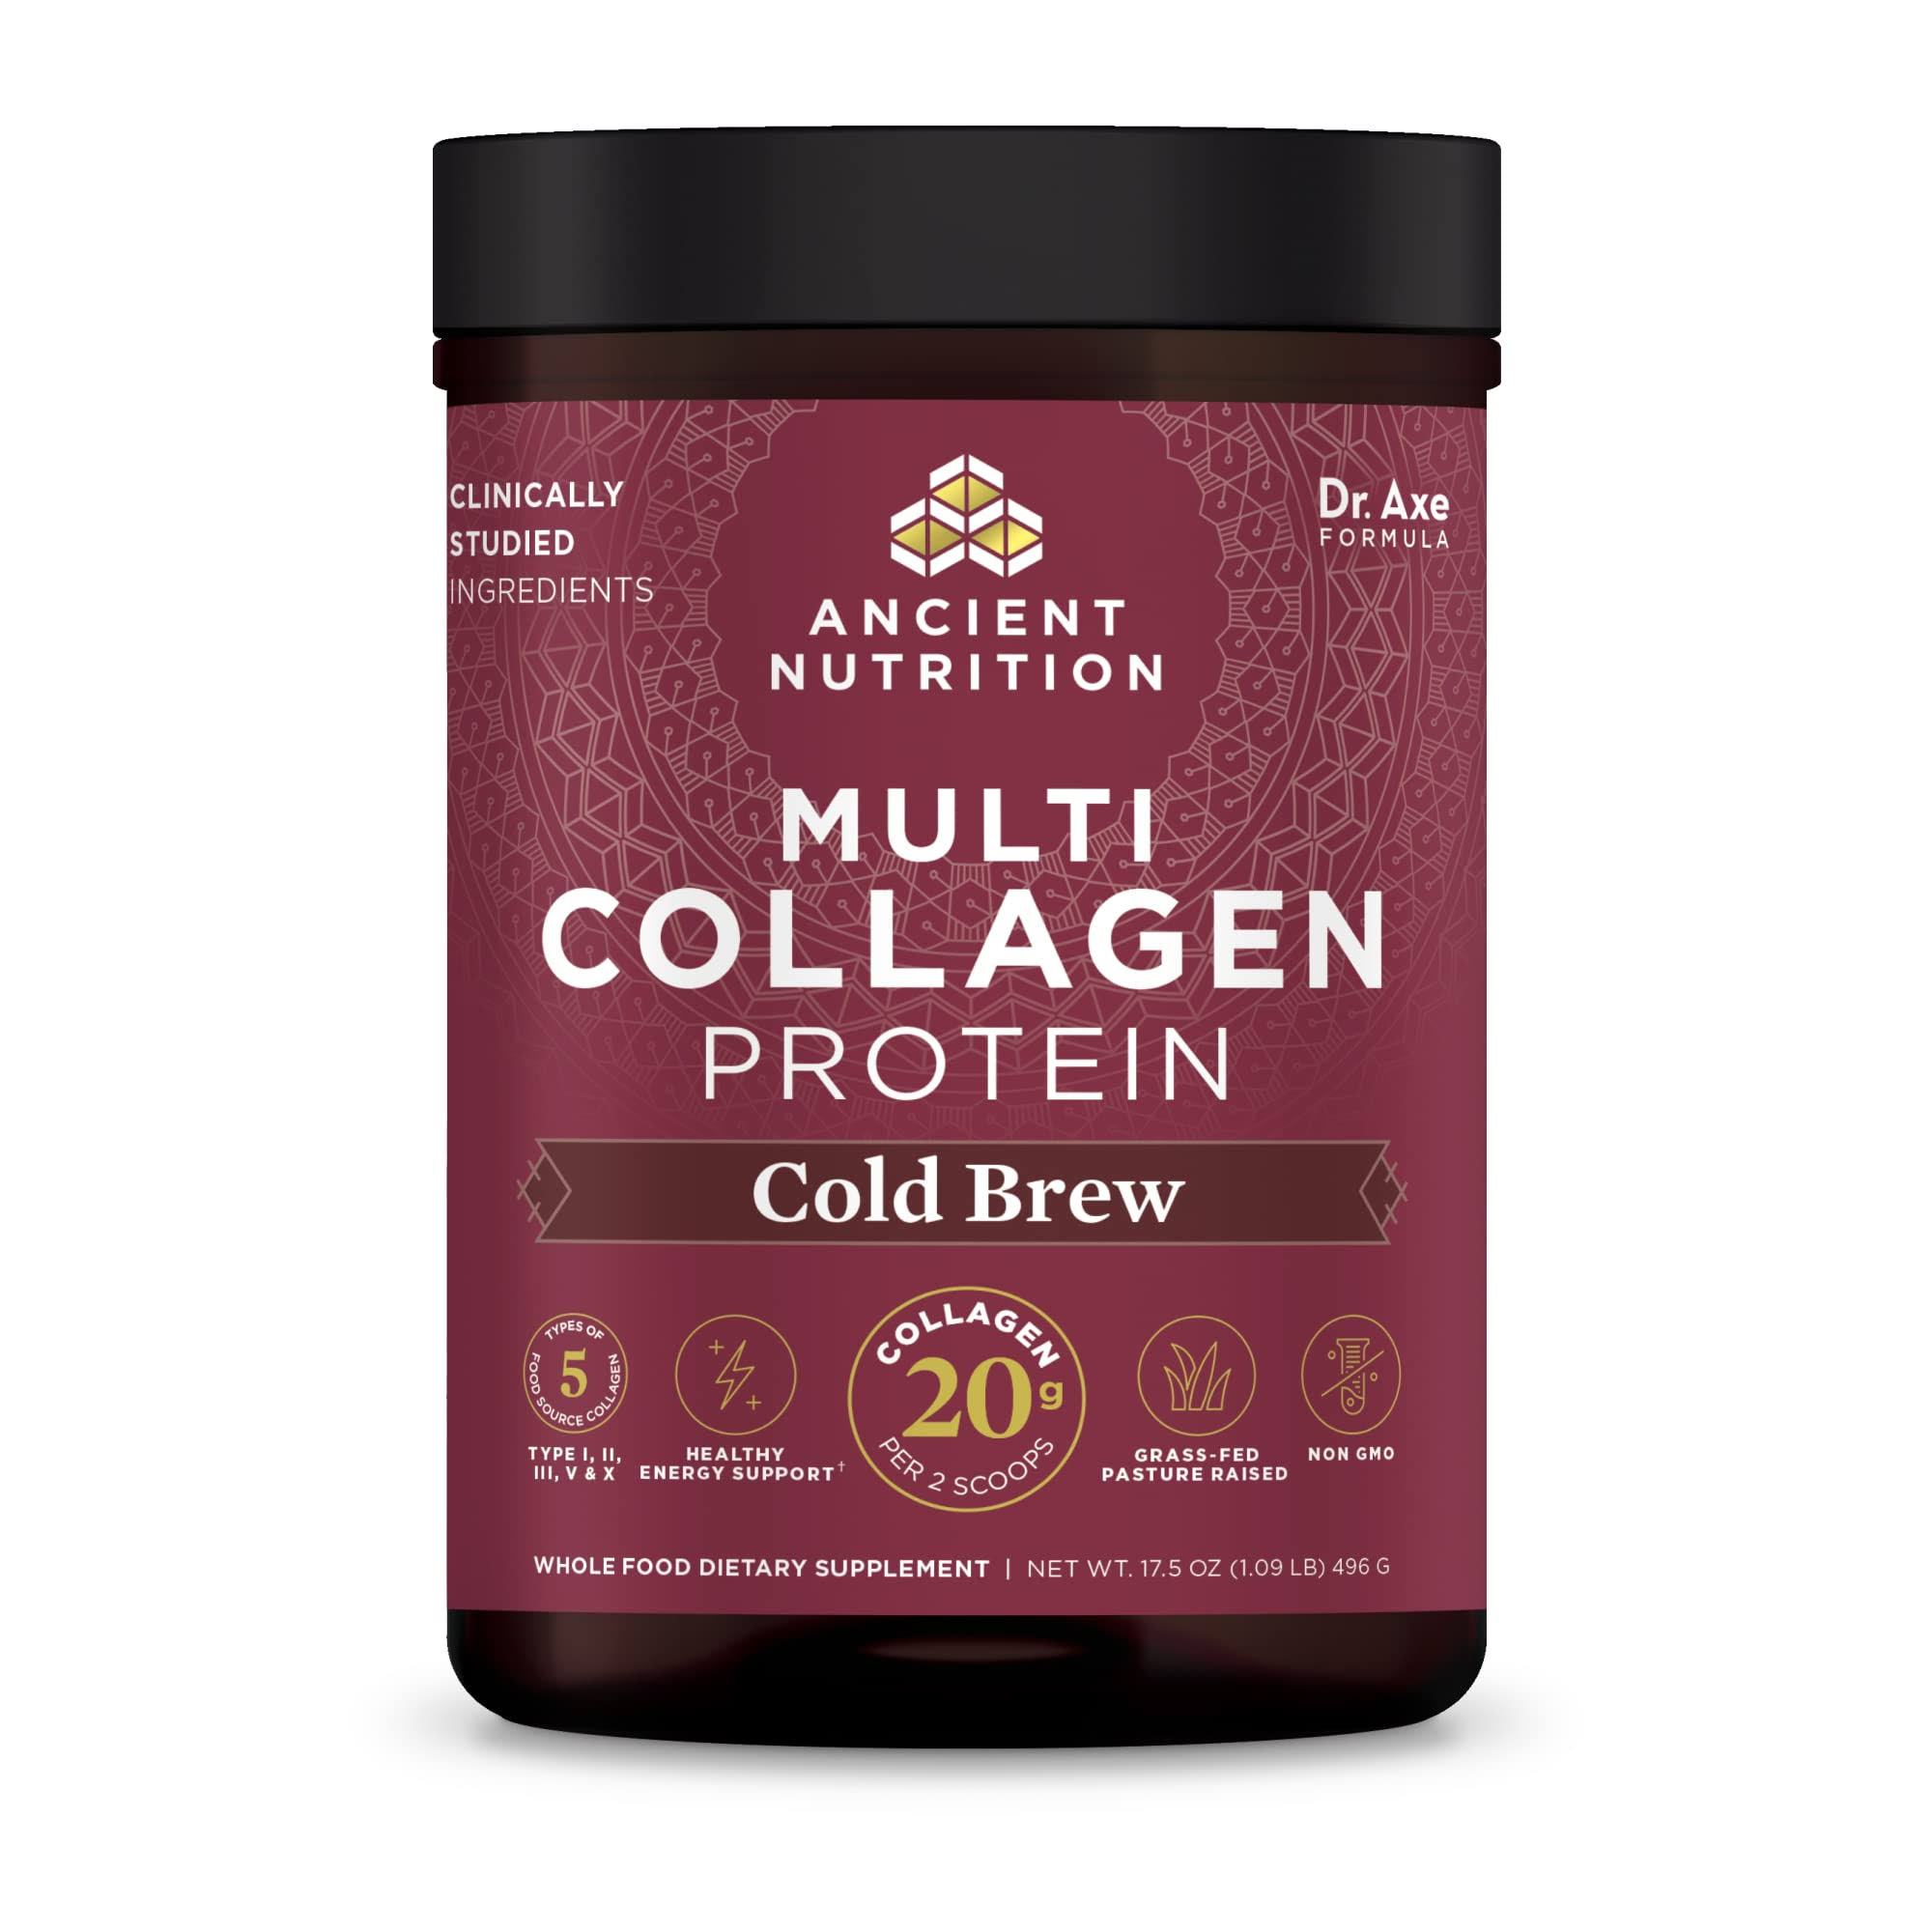 Ancient Nutrition - Multi Collagen Protein Powder, Cold Brew Collagen